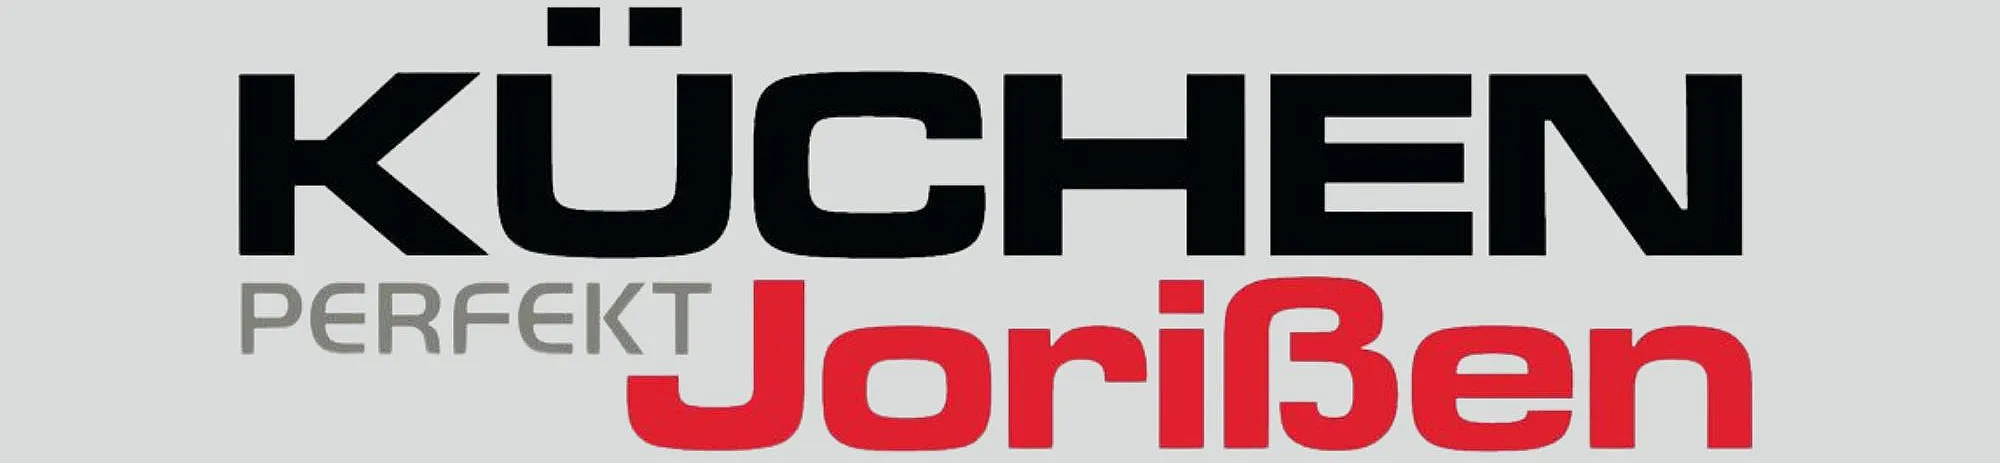 kuechen-perfekt-jorissen-top-banner